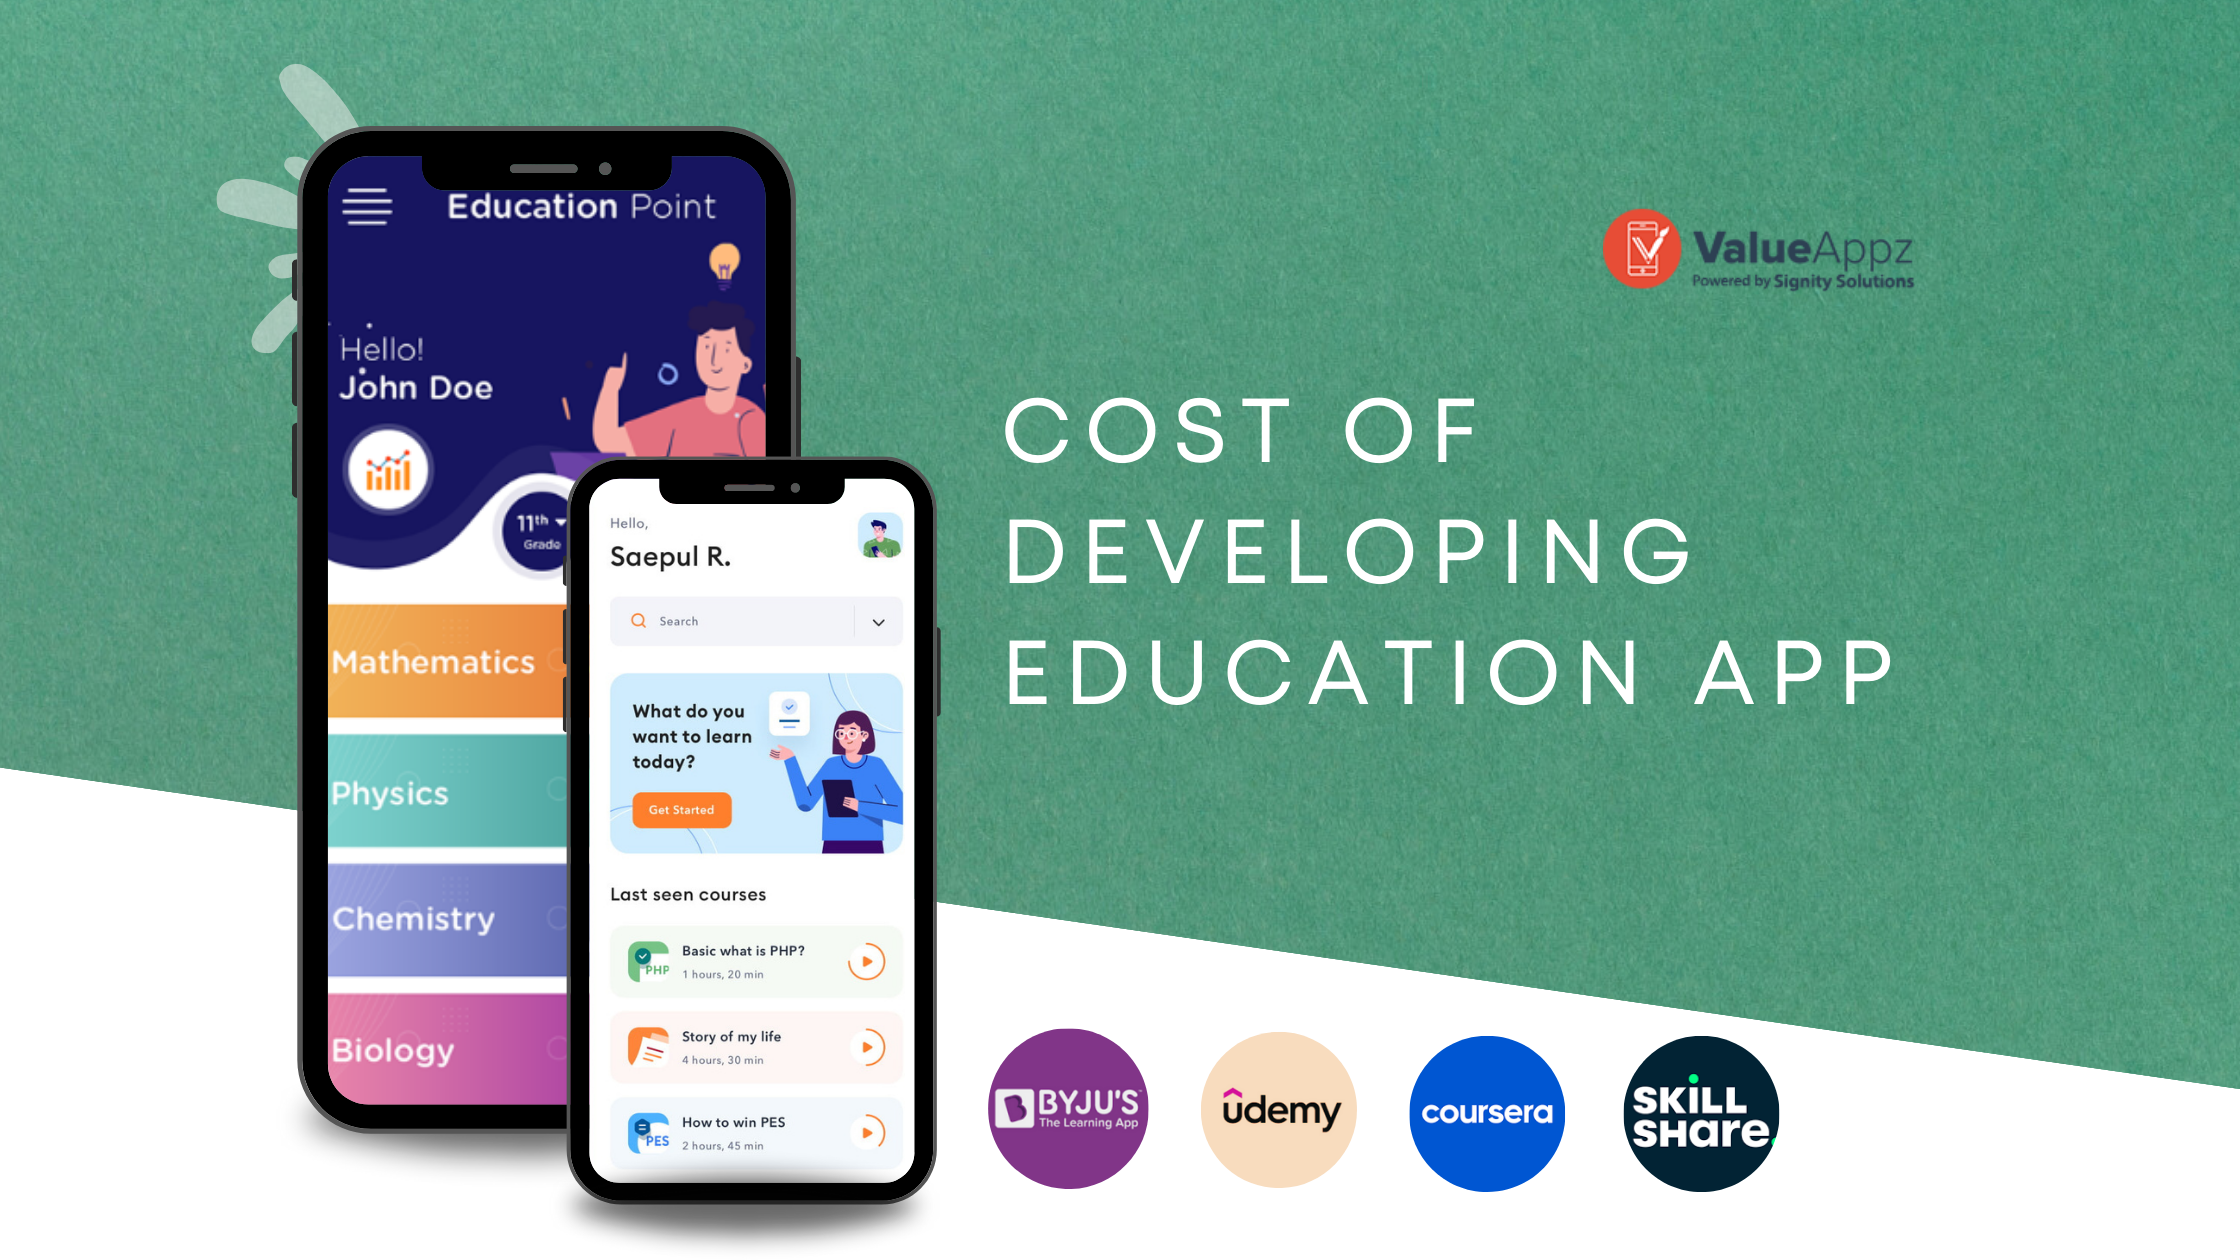 Build an Education App